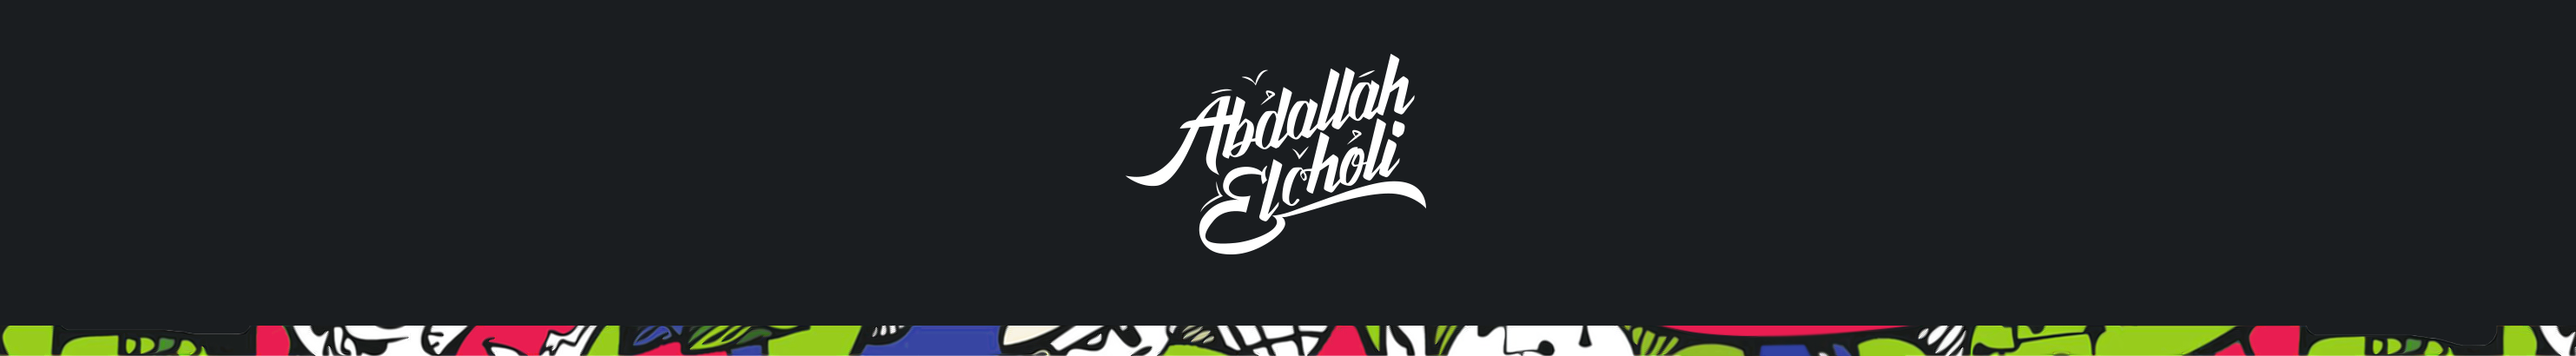 Баннер профиля Abdallah El Choli